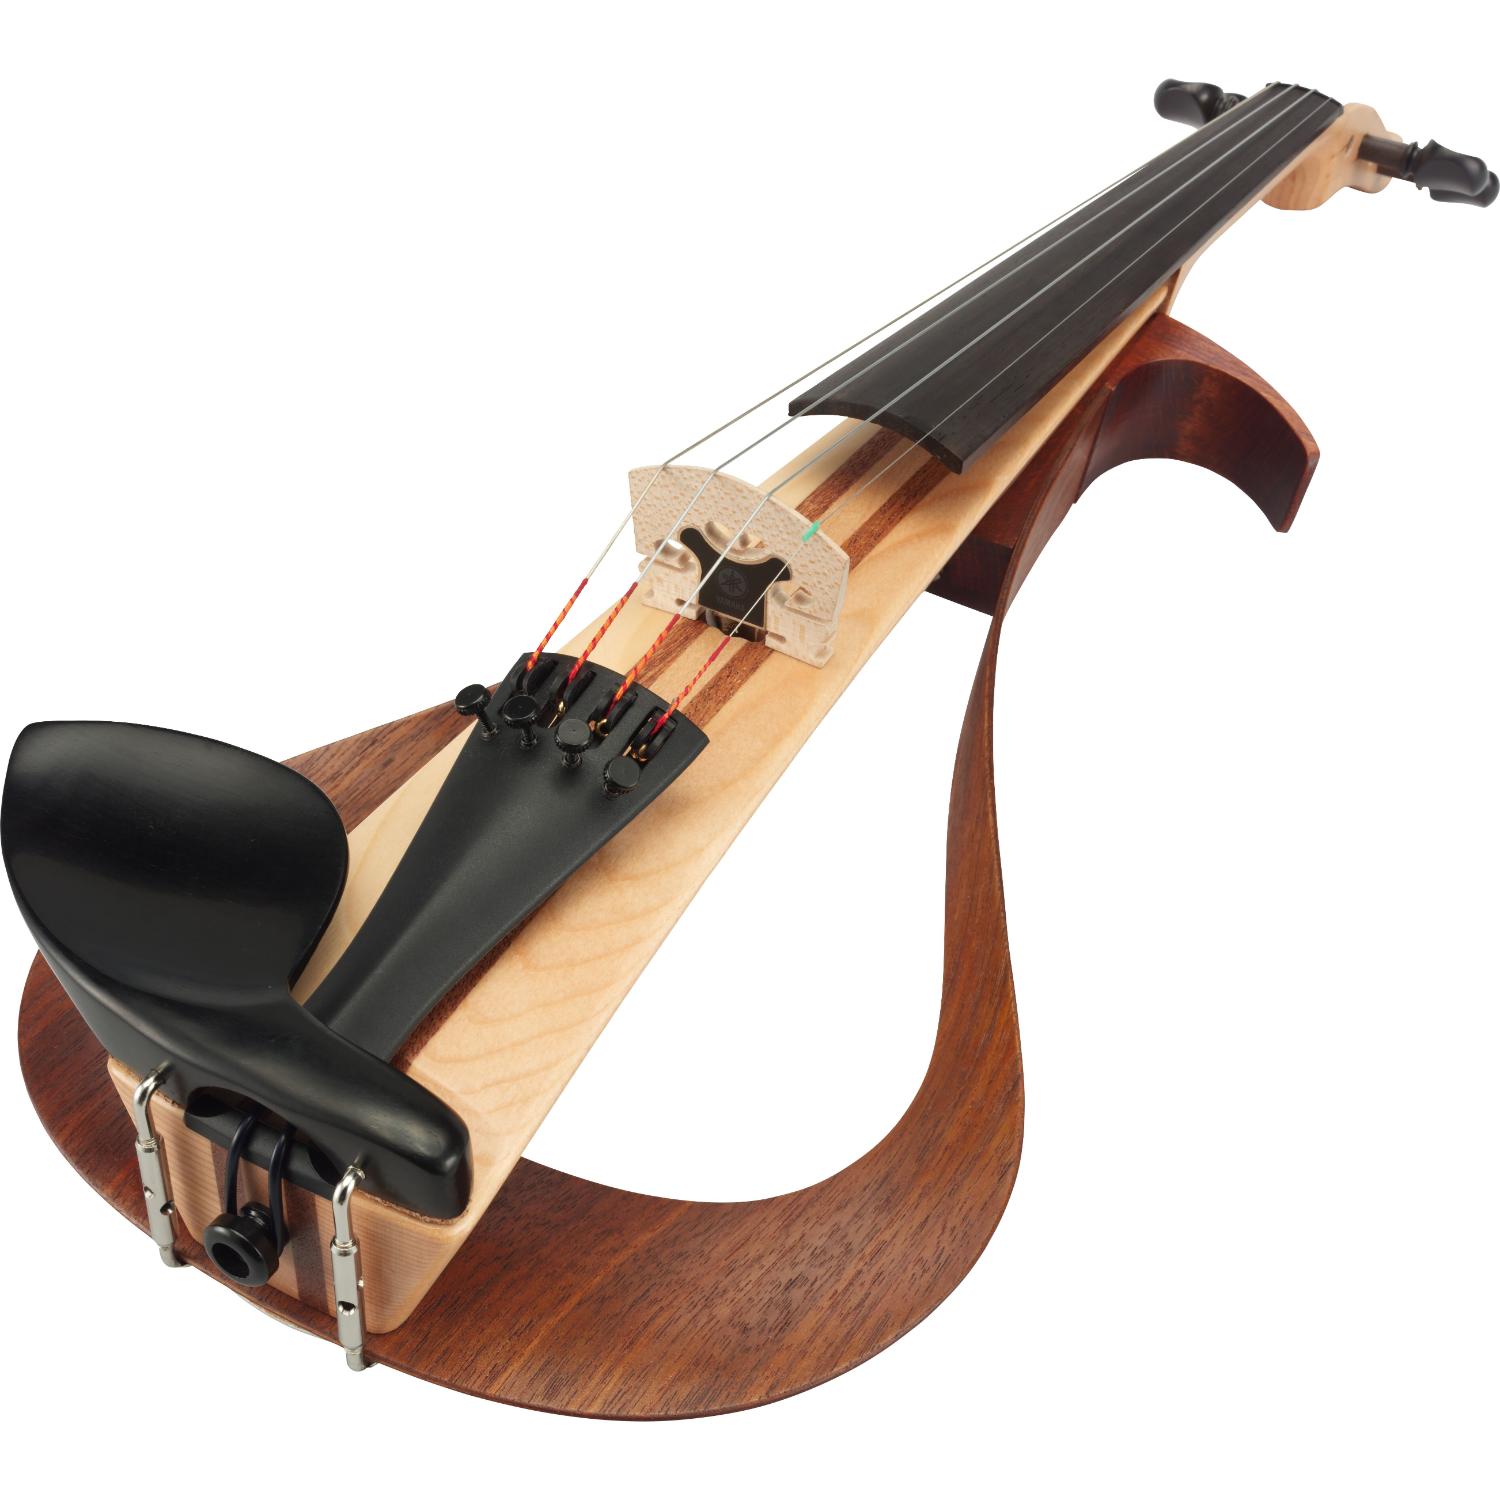 Yamaha YEV-104 Electric Violin, Natural